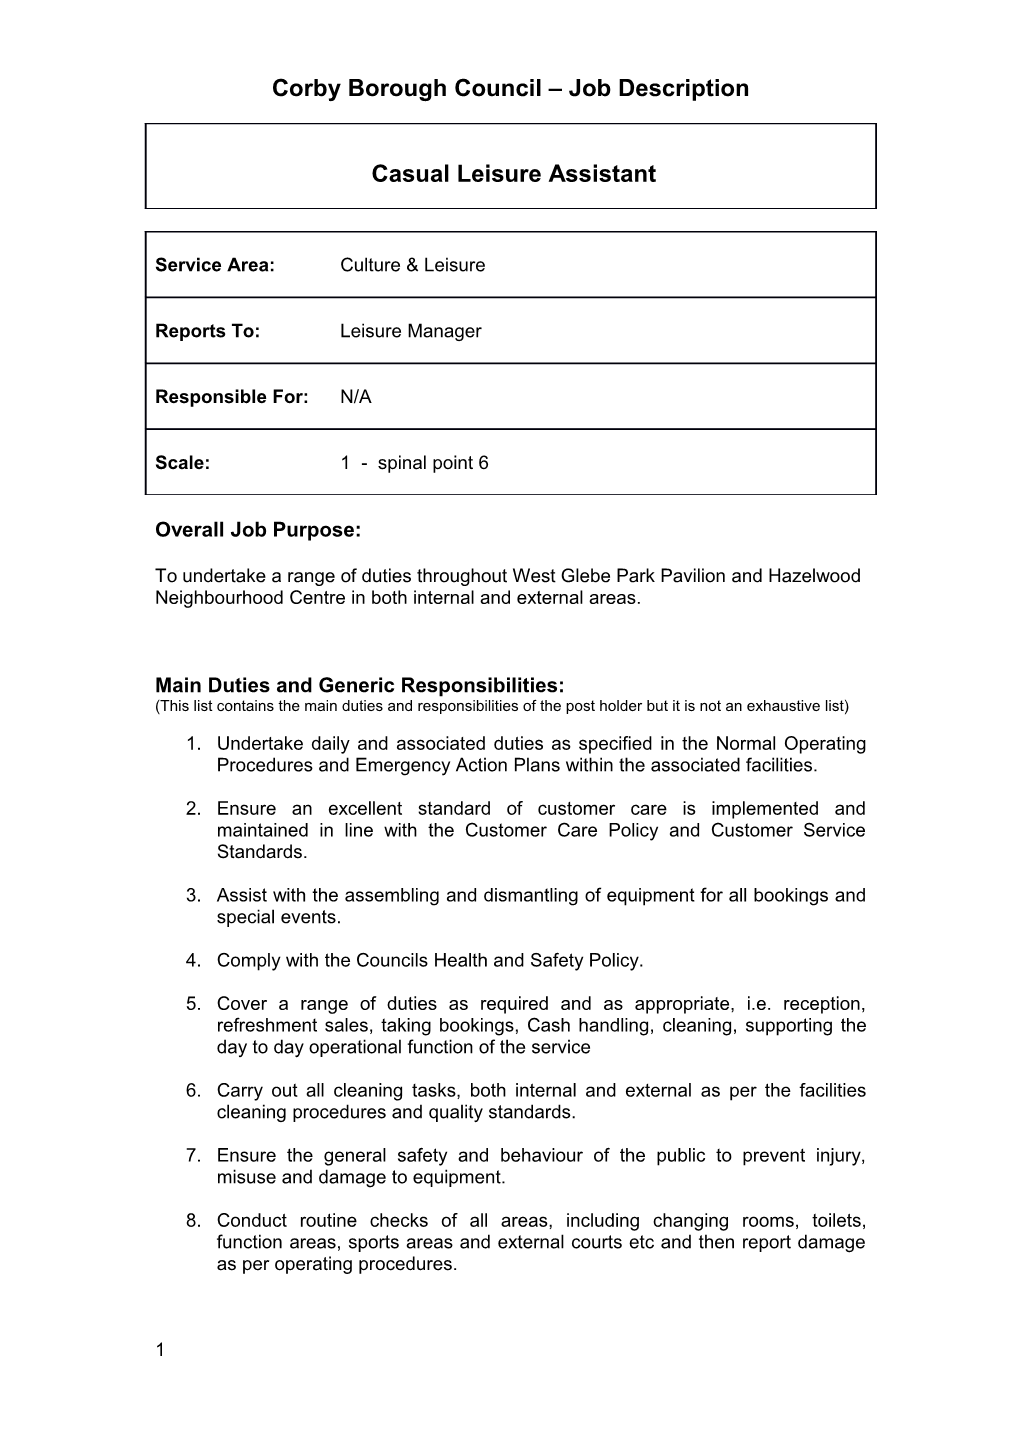 Corby Borough Council Job Description s4